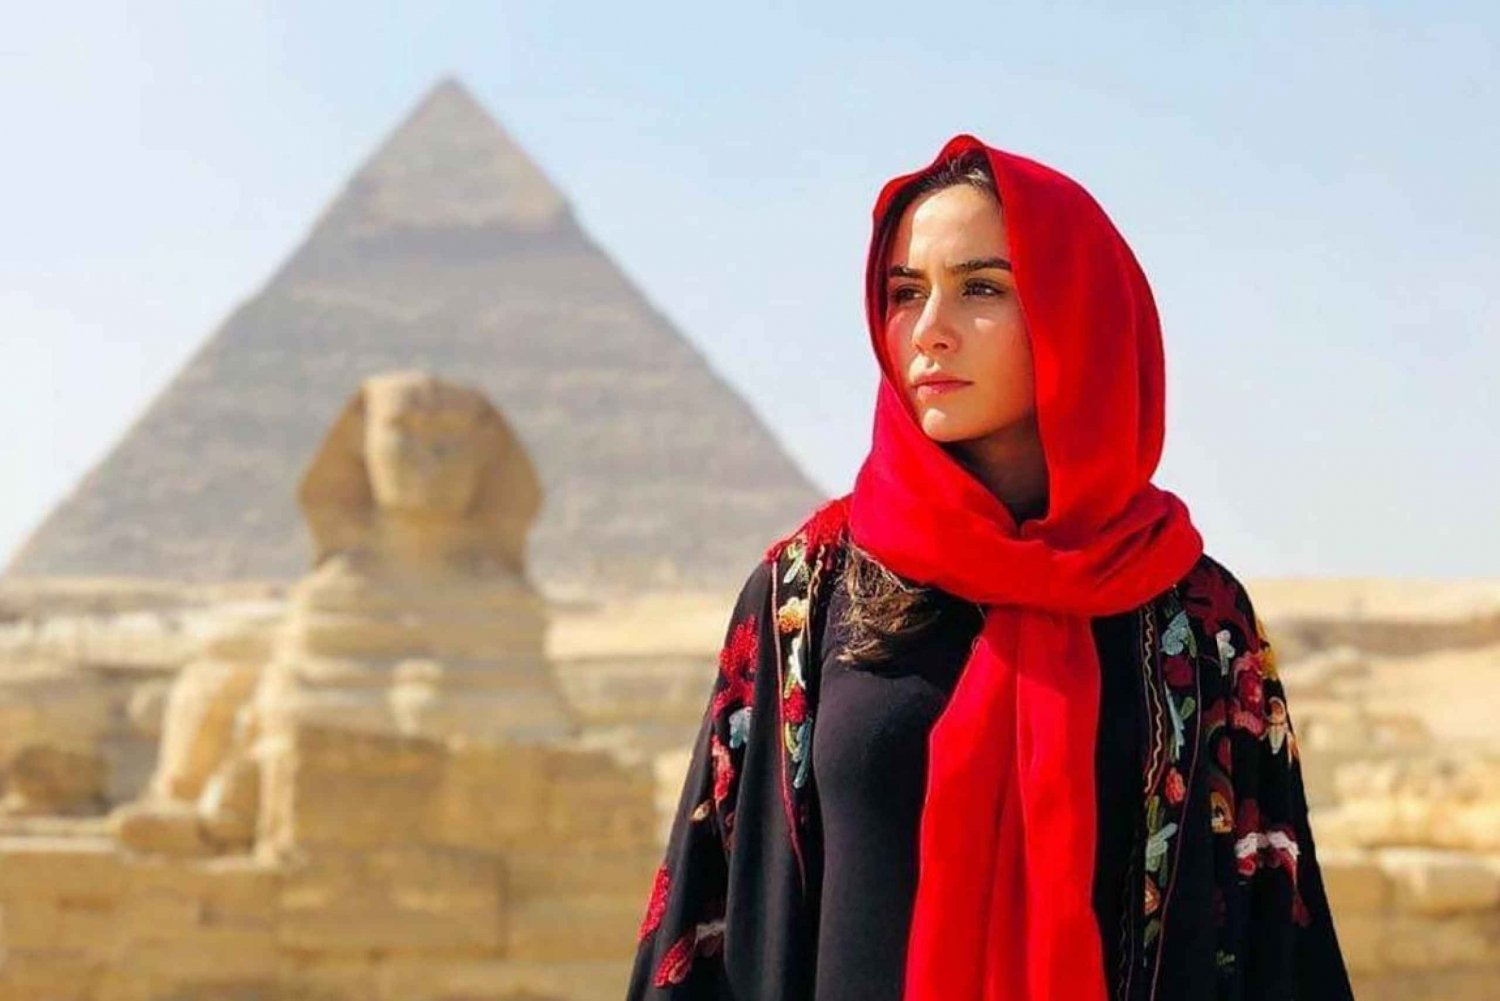 Cairo: Kombination af pyramider, museumsbesøg og middagskrydstogt